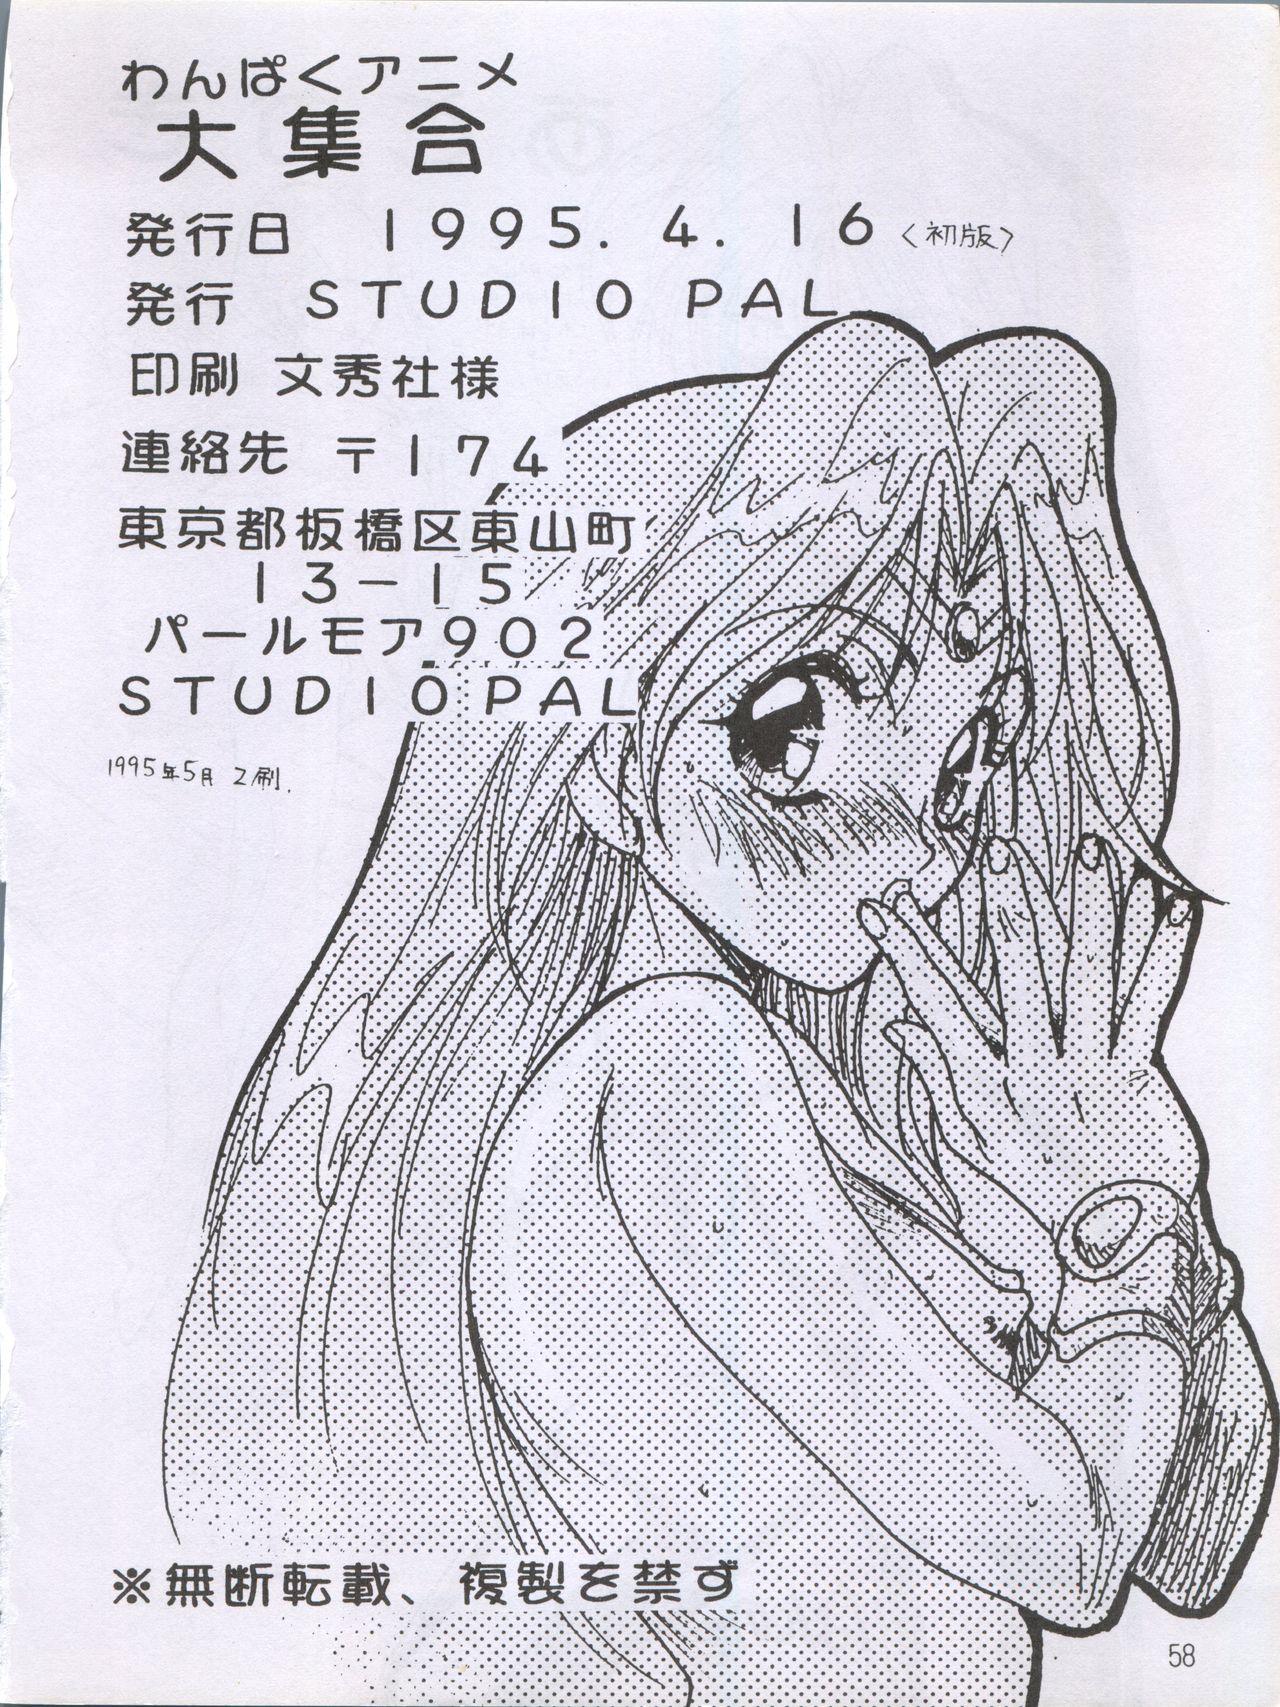 Tall Wanpaku Anime Dai Shuugou - G gundam Macross 7 Lord of lords ryu knight Wedding peach Students - Page 62